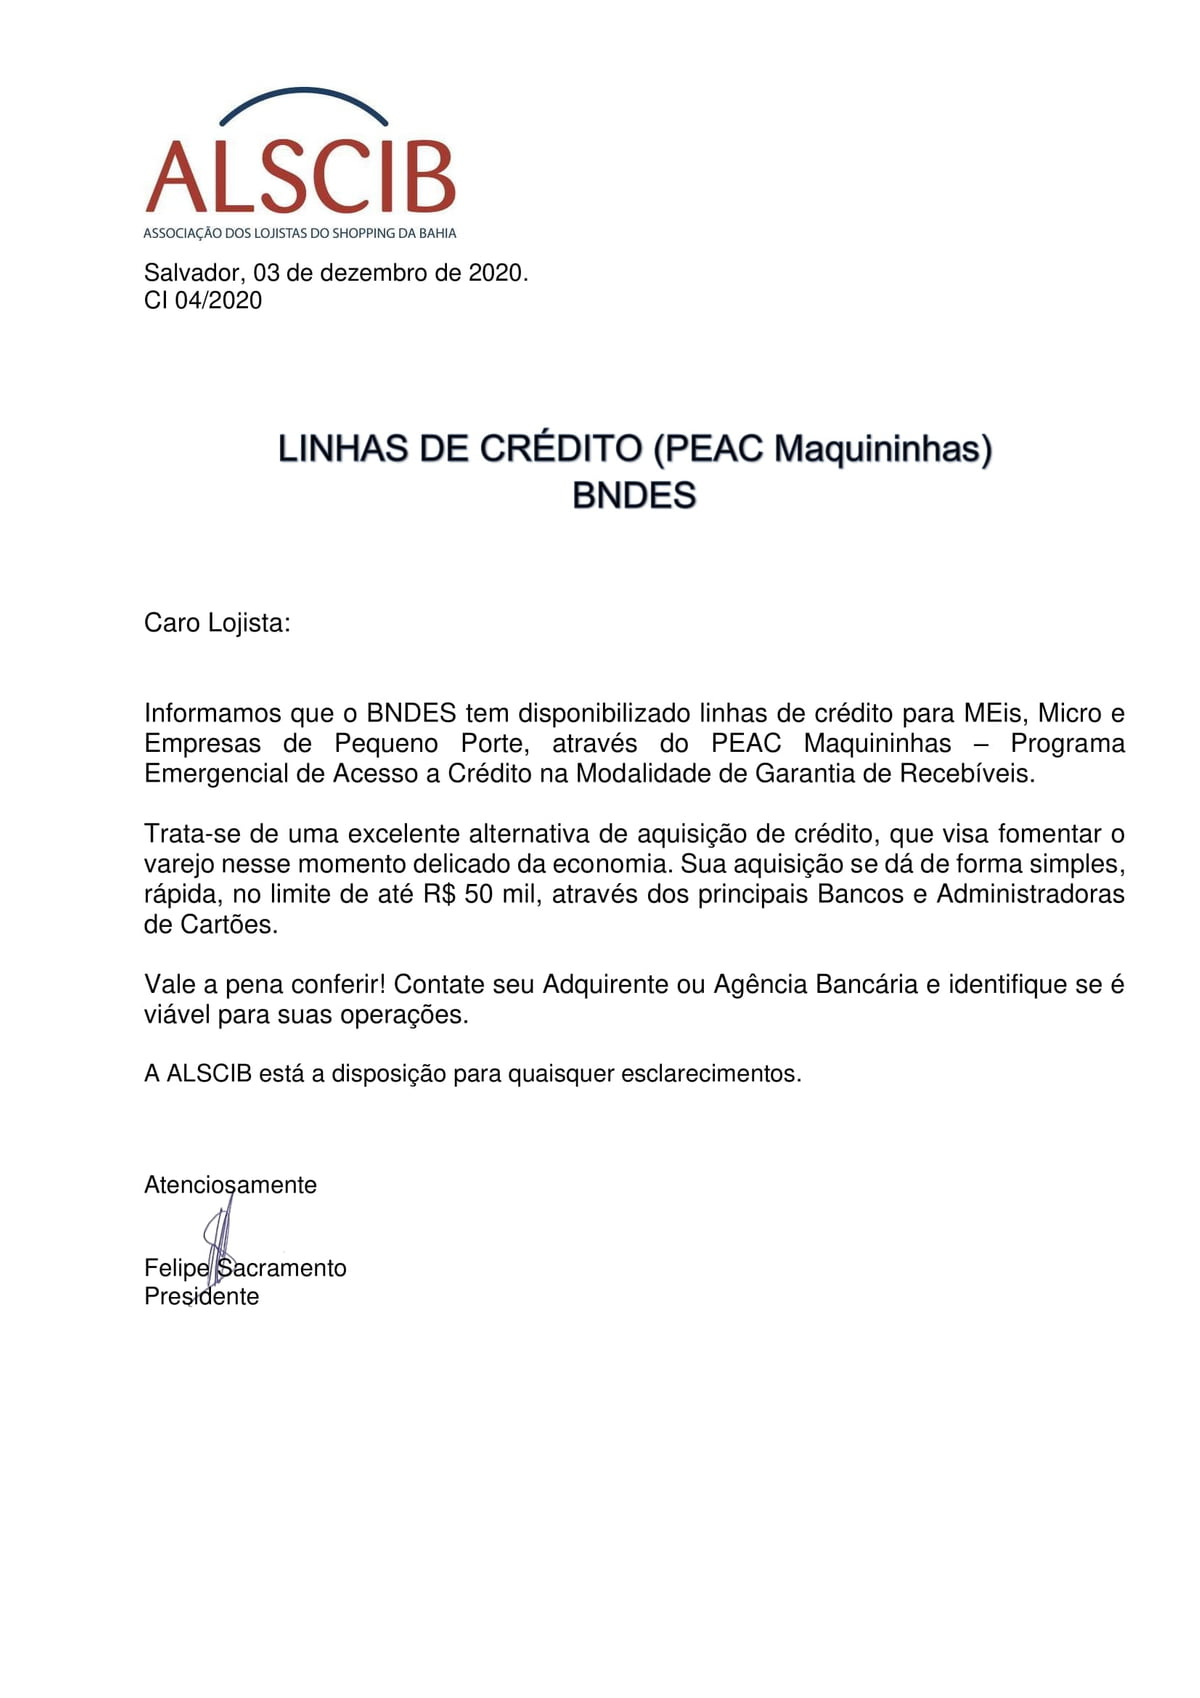 Linhas de Crédito (PEAC Maquininhas - BNDES)